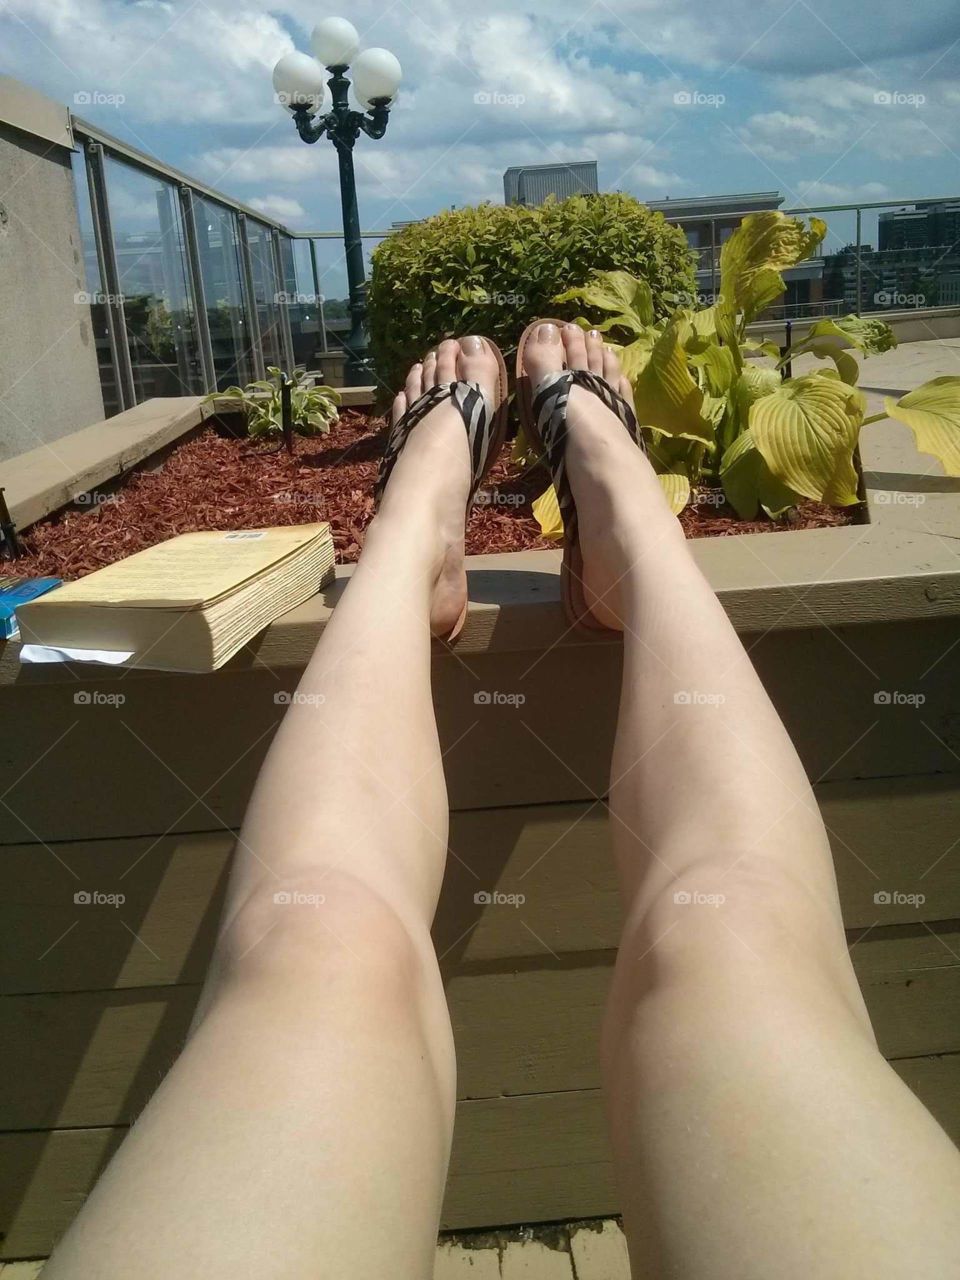 Rooftop Sun bathing freshly shaved legs